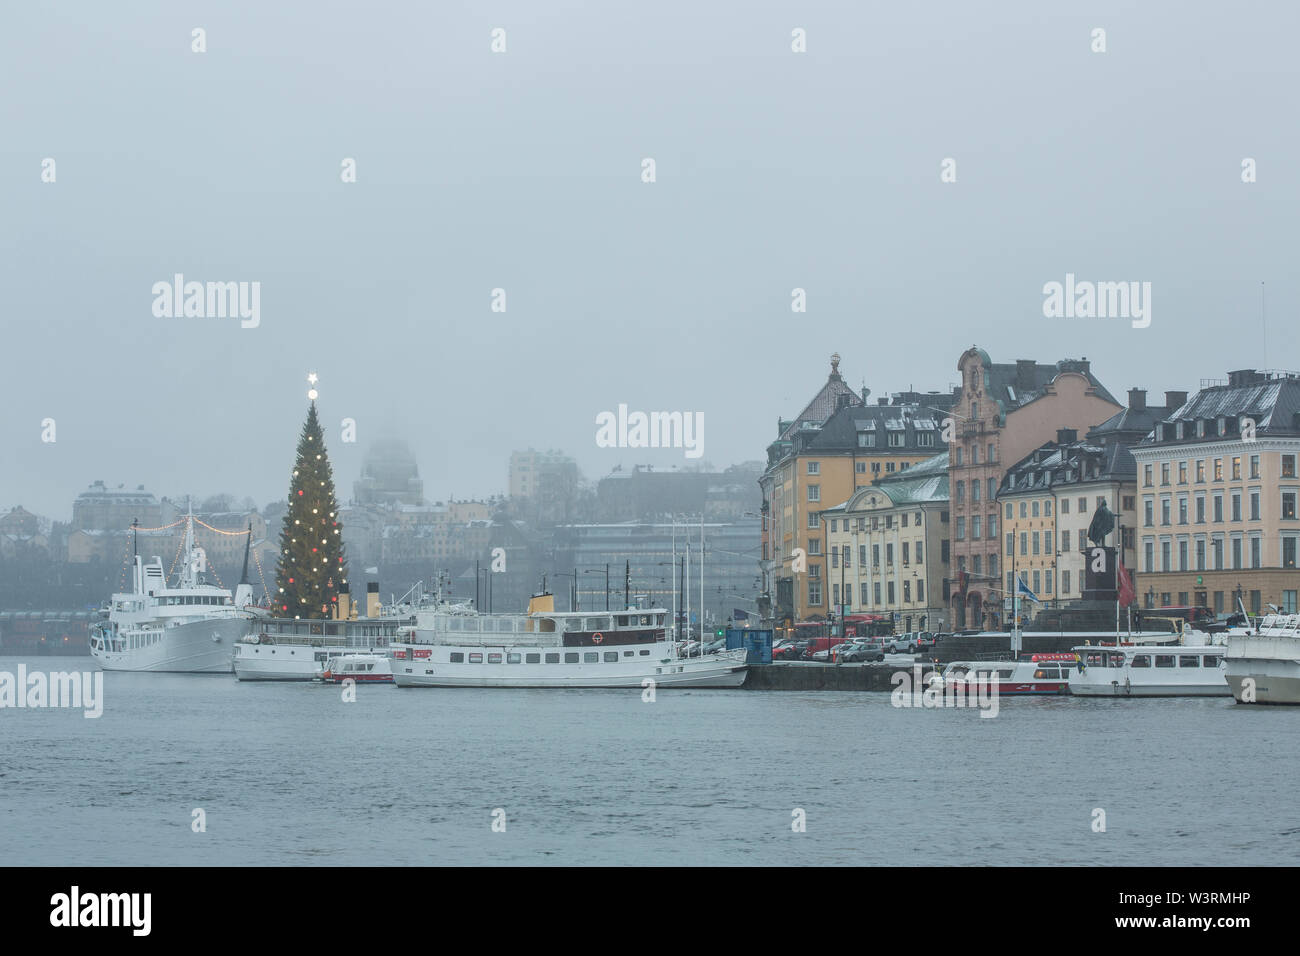 Schöne Winterlandschaft Panorama der Altstadt (Gamla Stan), Pier Architektur dekoriert mit glänzenden Xmas Tree der größte in der Welt zu Weihnachten. Stockfoto